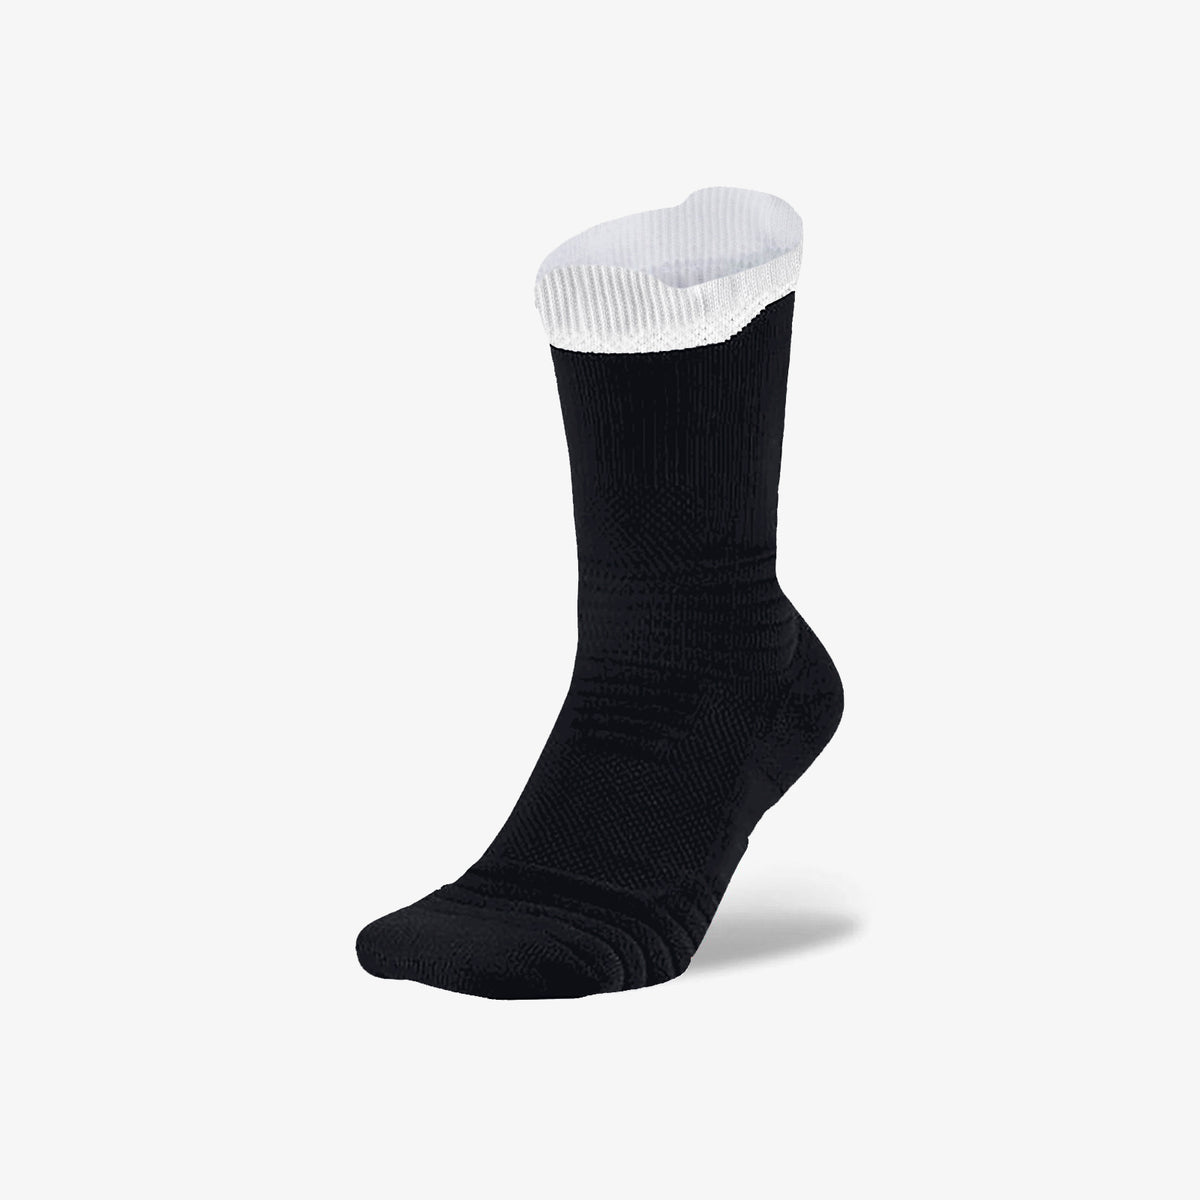 Crew Socks - Black/White